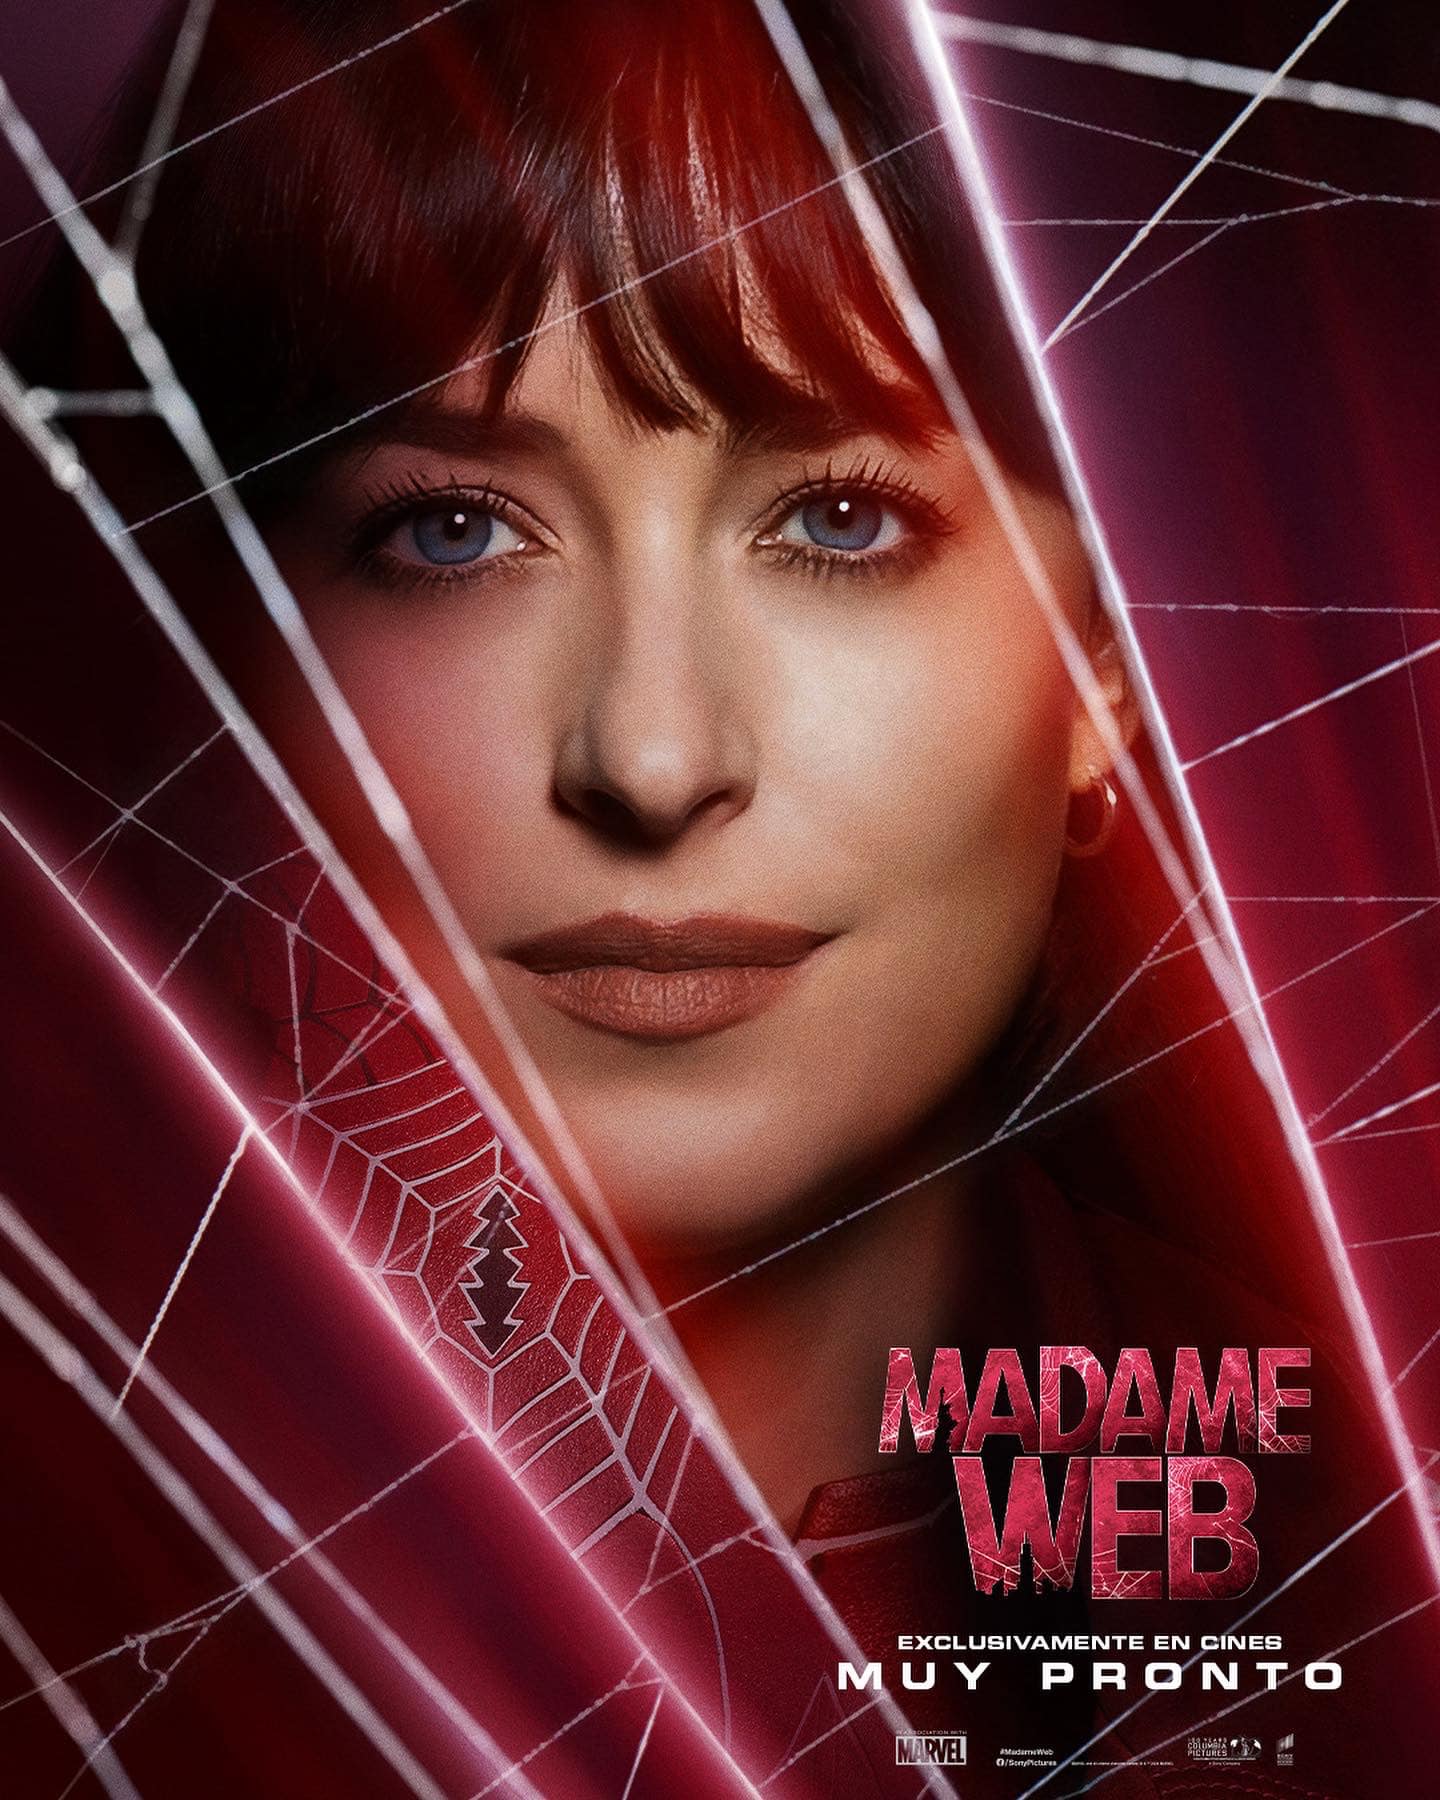 La promoción de la película Madame Web continúa,  y ahora podemos ver a las protagonistas en unos nuevos pósters con su imagen.